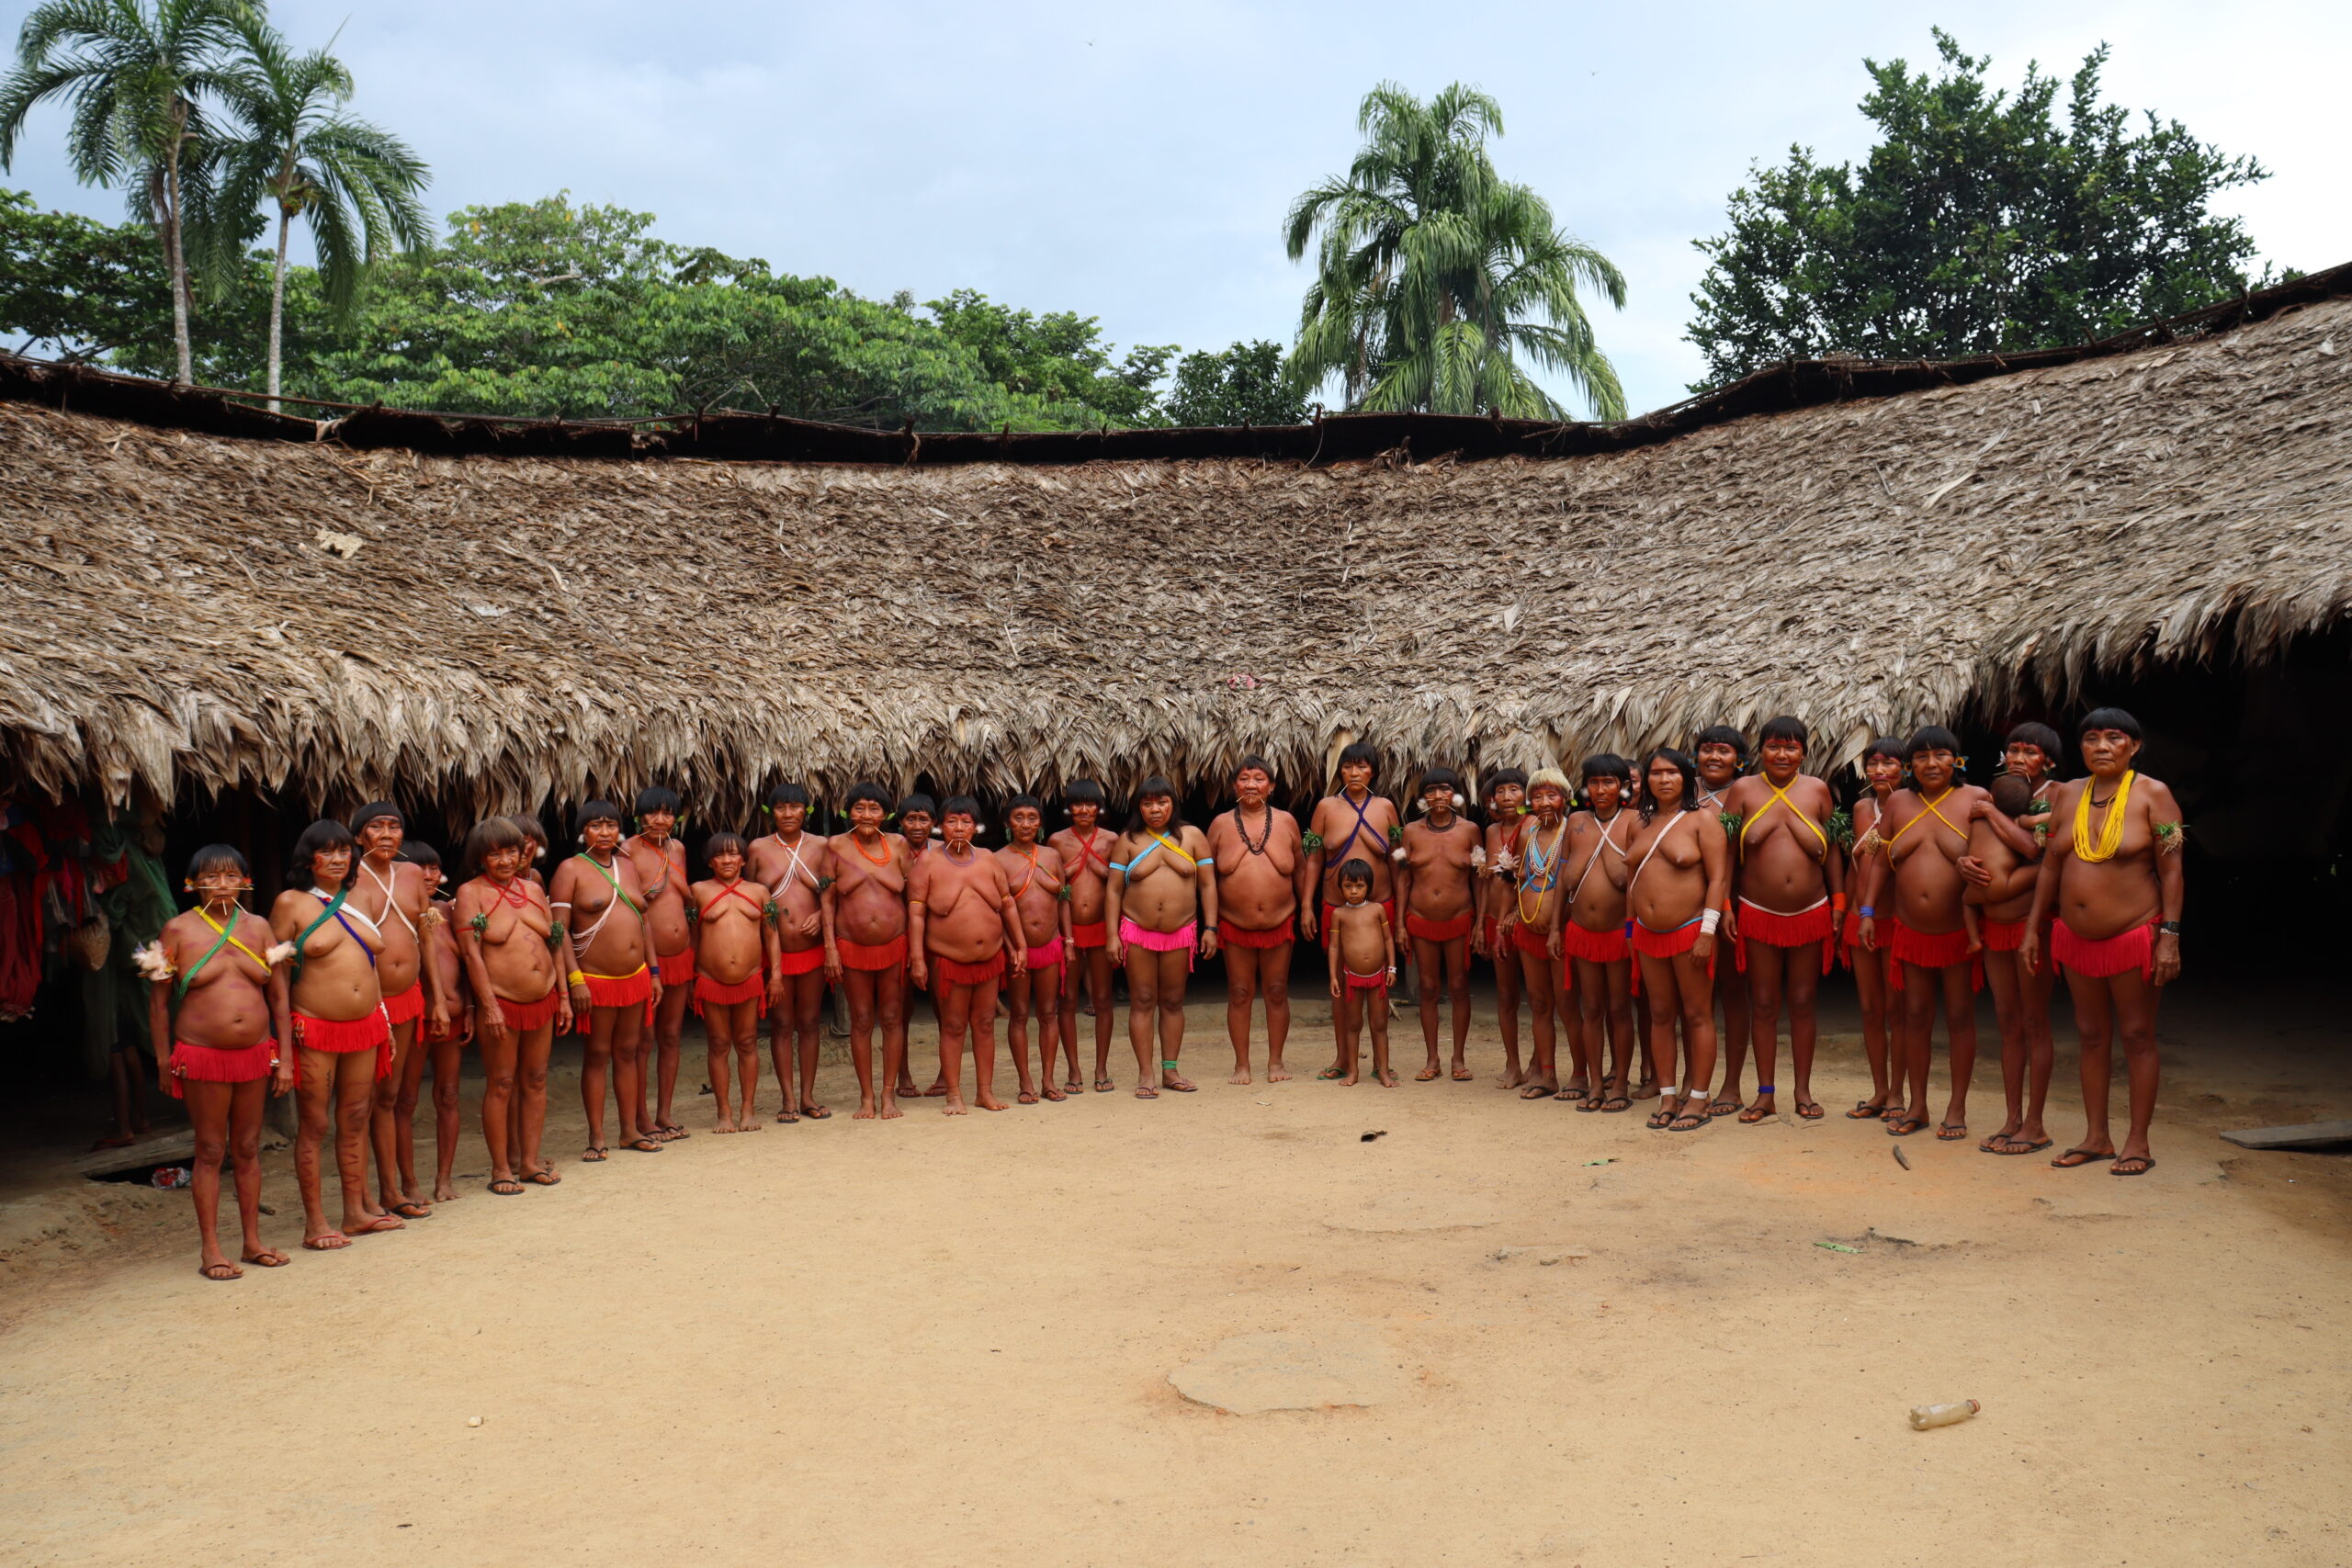 Jogador: ajude a proteger a floresta em “Save Amazônia